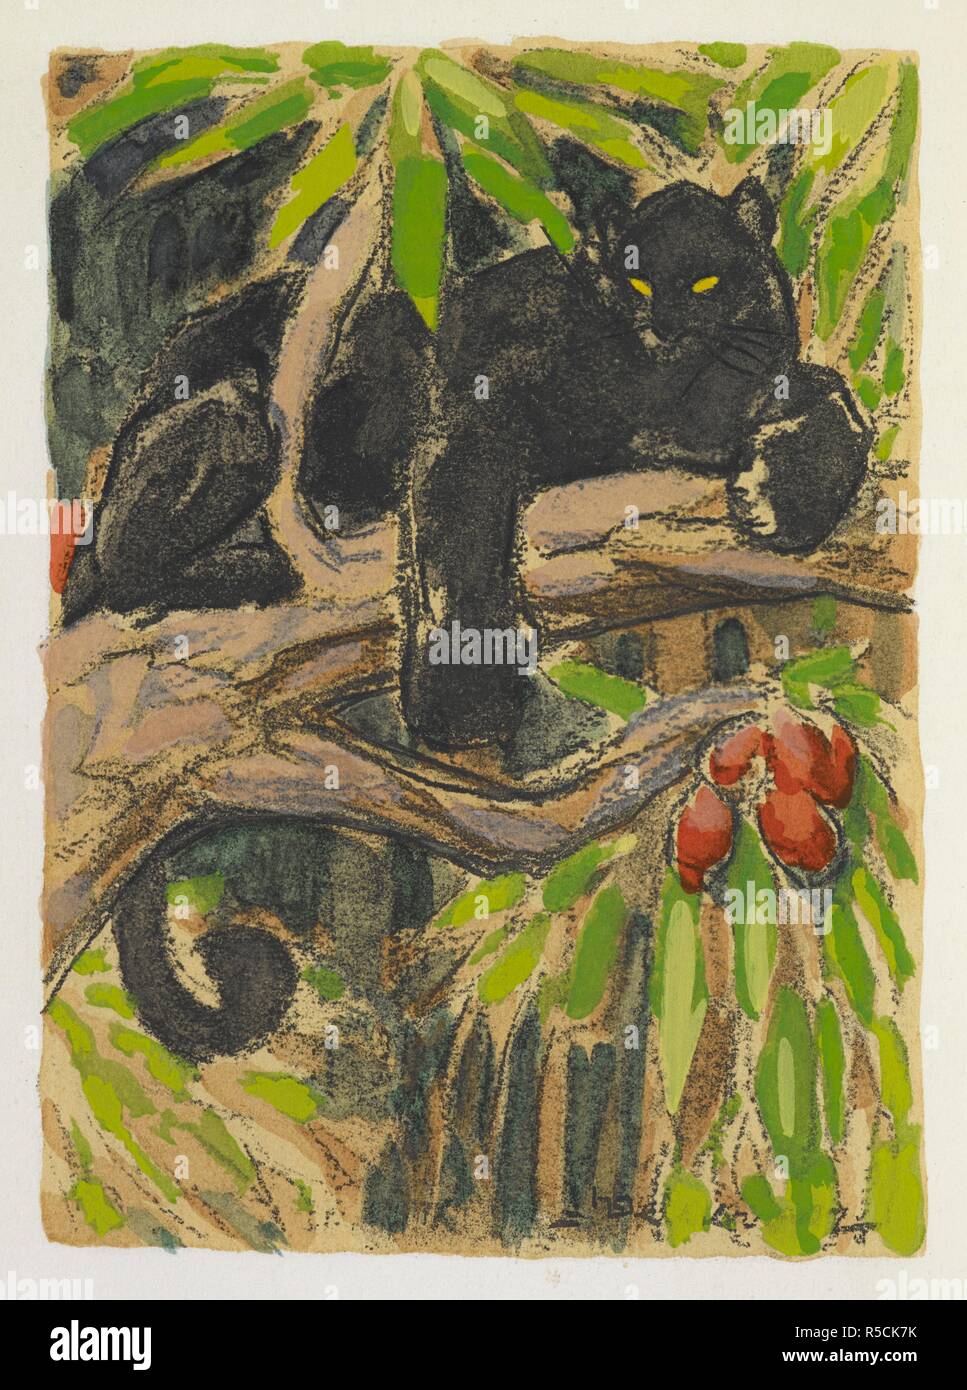 Bagheera the black Panther. Le Second livre de la Jungle. Traduction de Louis Fabulet et Robert d'HumieÌ€res. Paris, [1899]. Source: File 617 frontispiece. Author: KIPLING, RUDYARD. Stock Photo